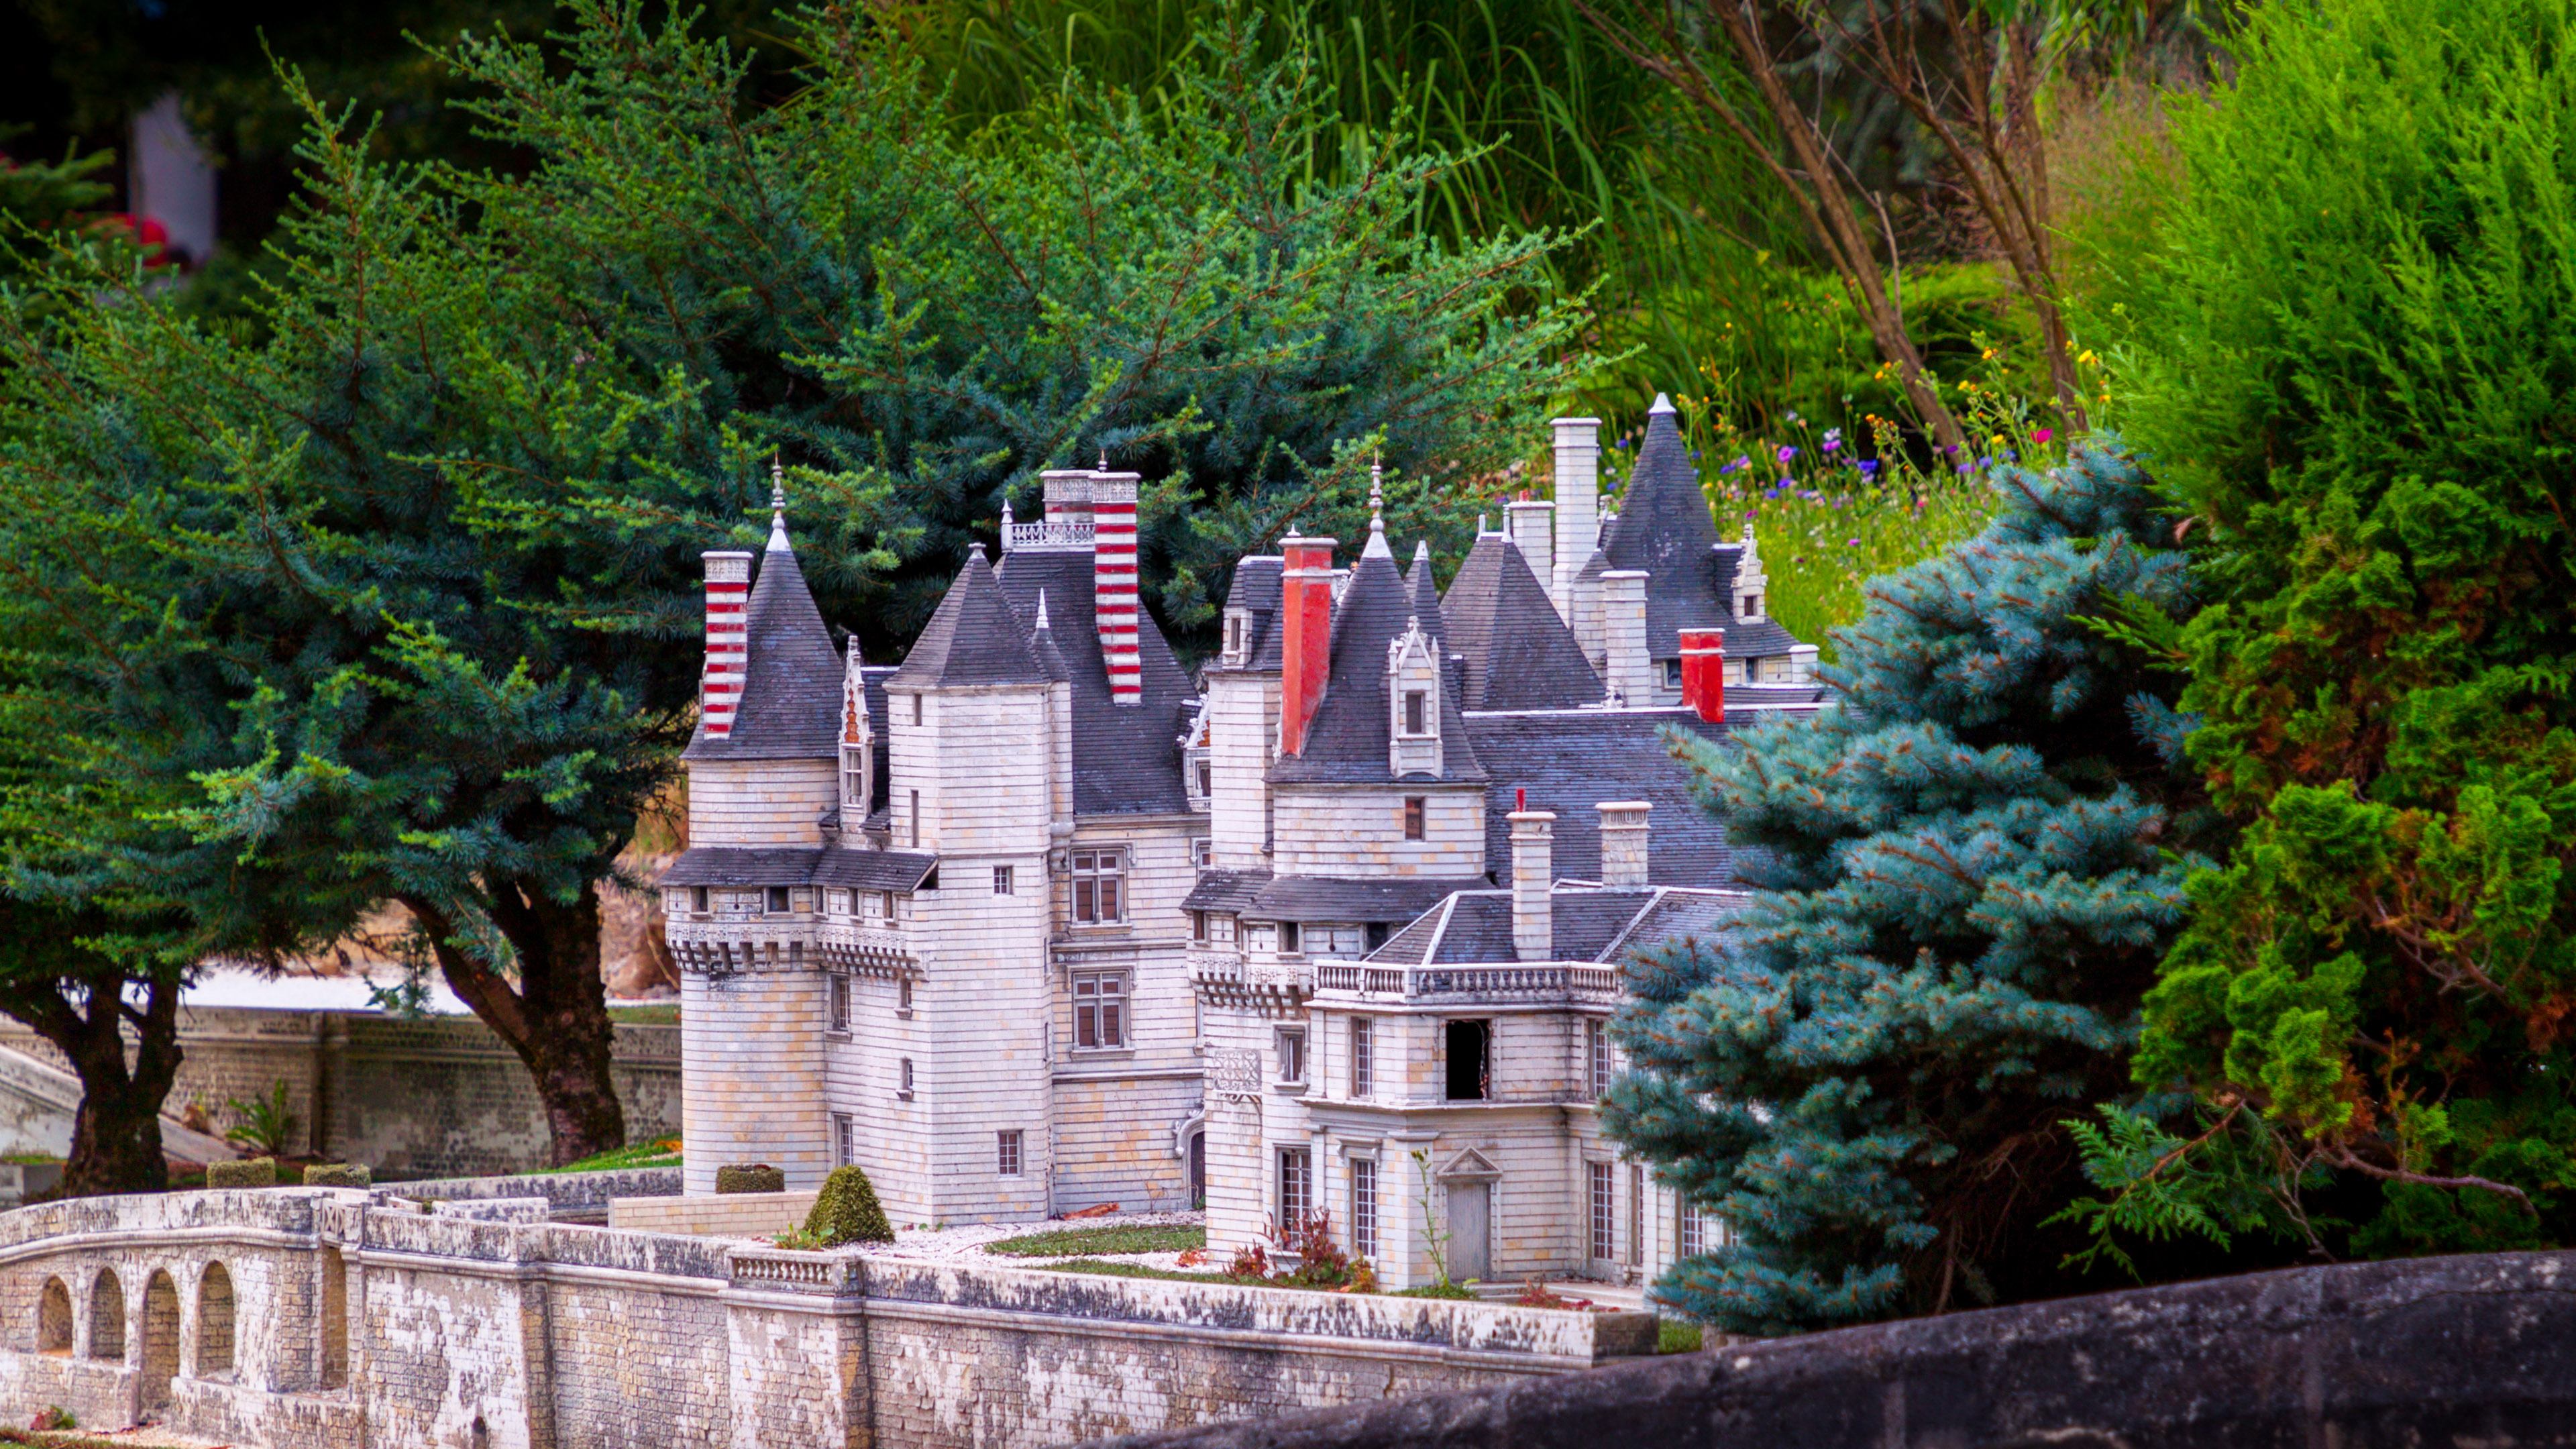 desktop wallpaper 4k of french castle in  Ultra HD resolution